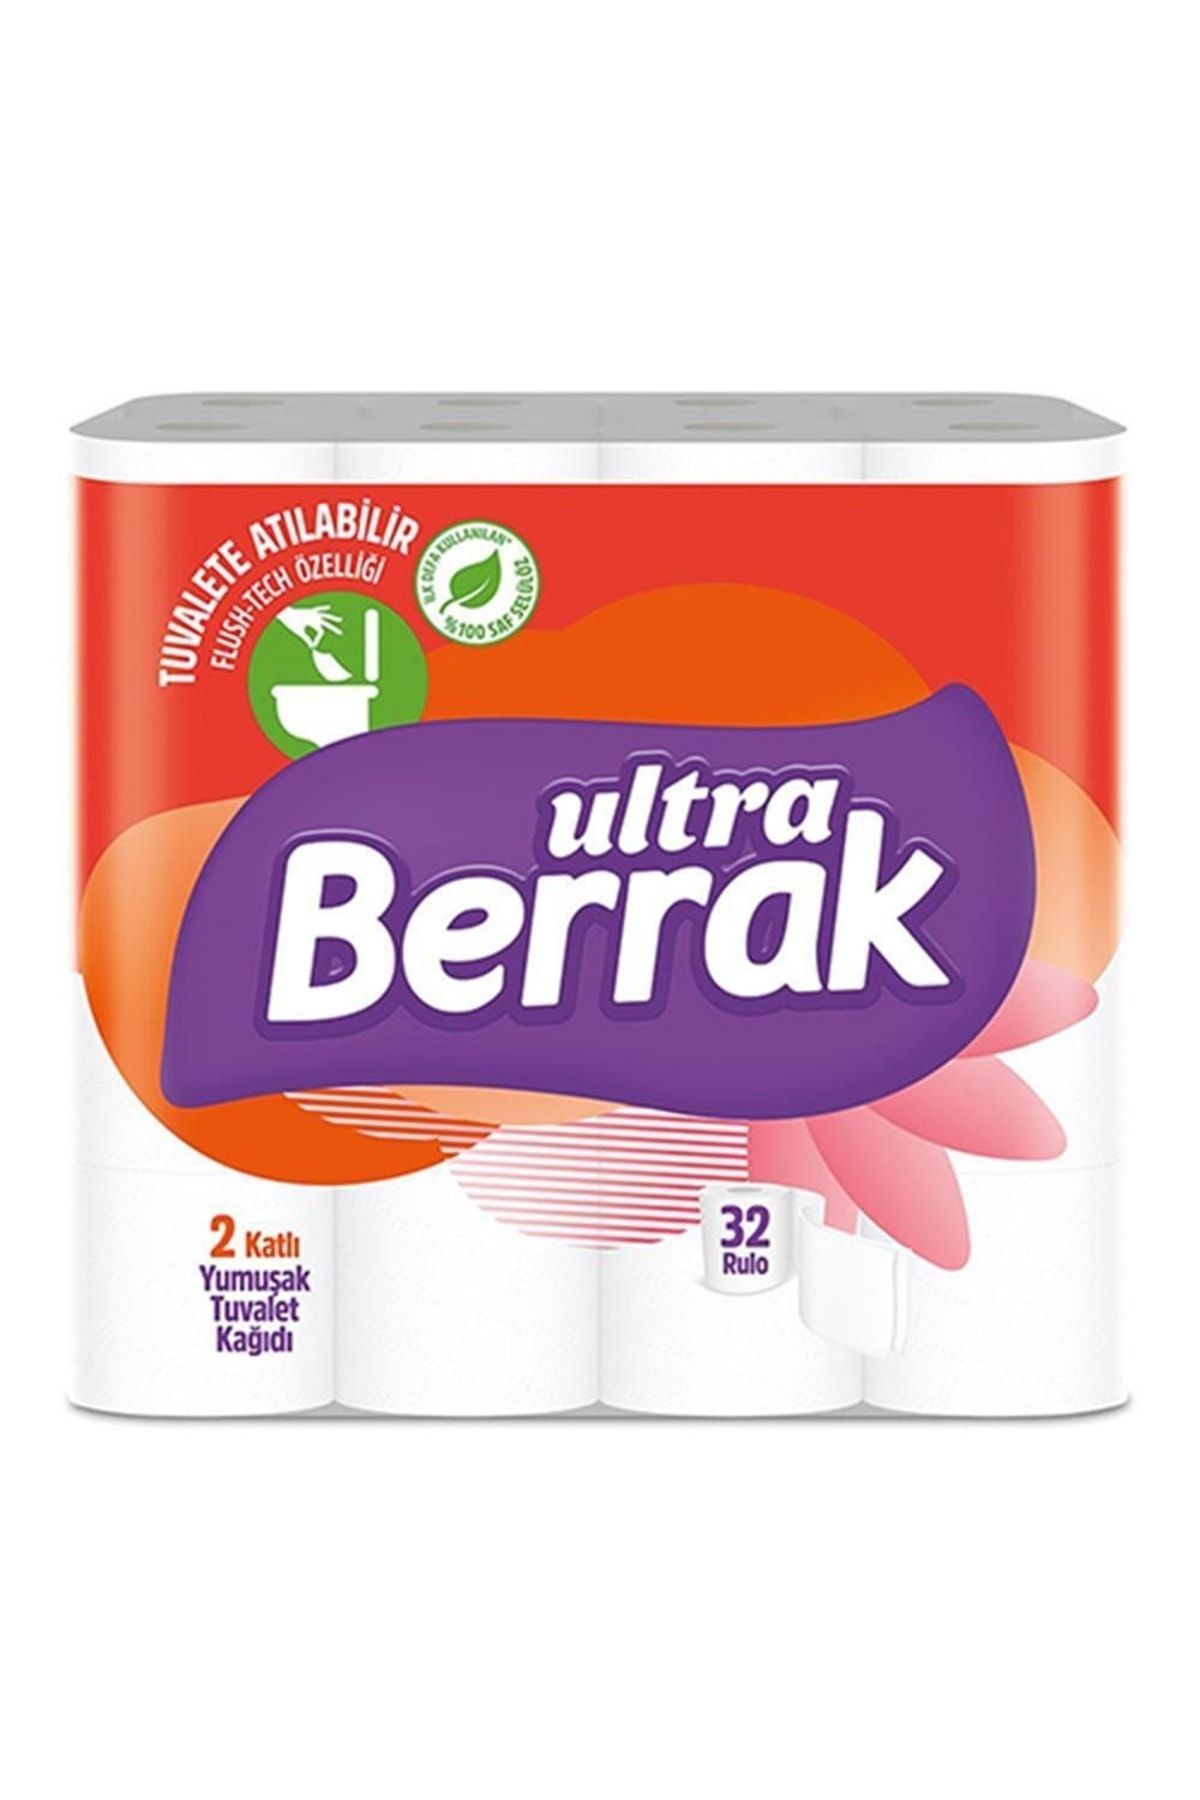 Berrak Ultra 2 Katlı Renkli Ve Parfümlü Tuvalet Kağıdı - 32 Rulo